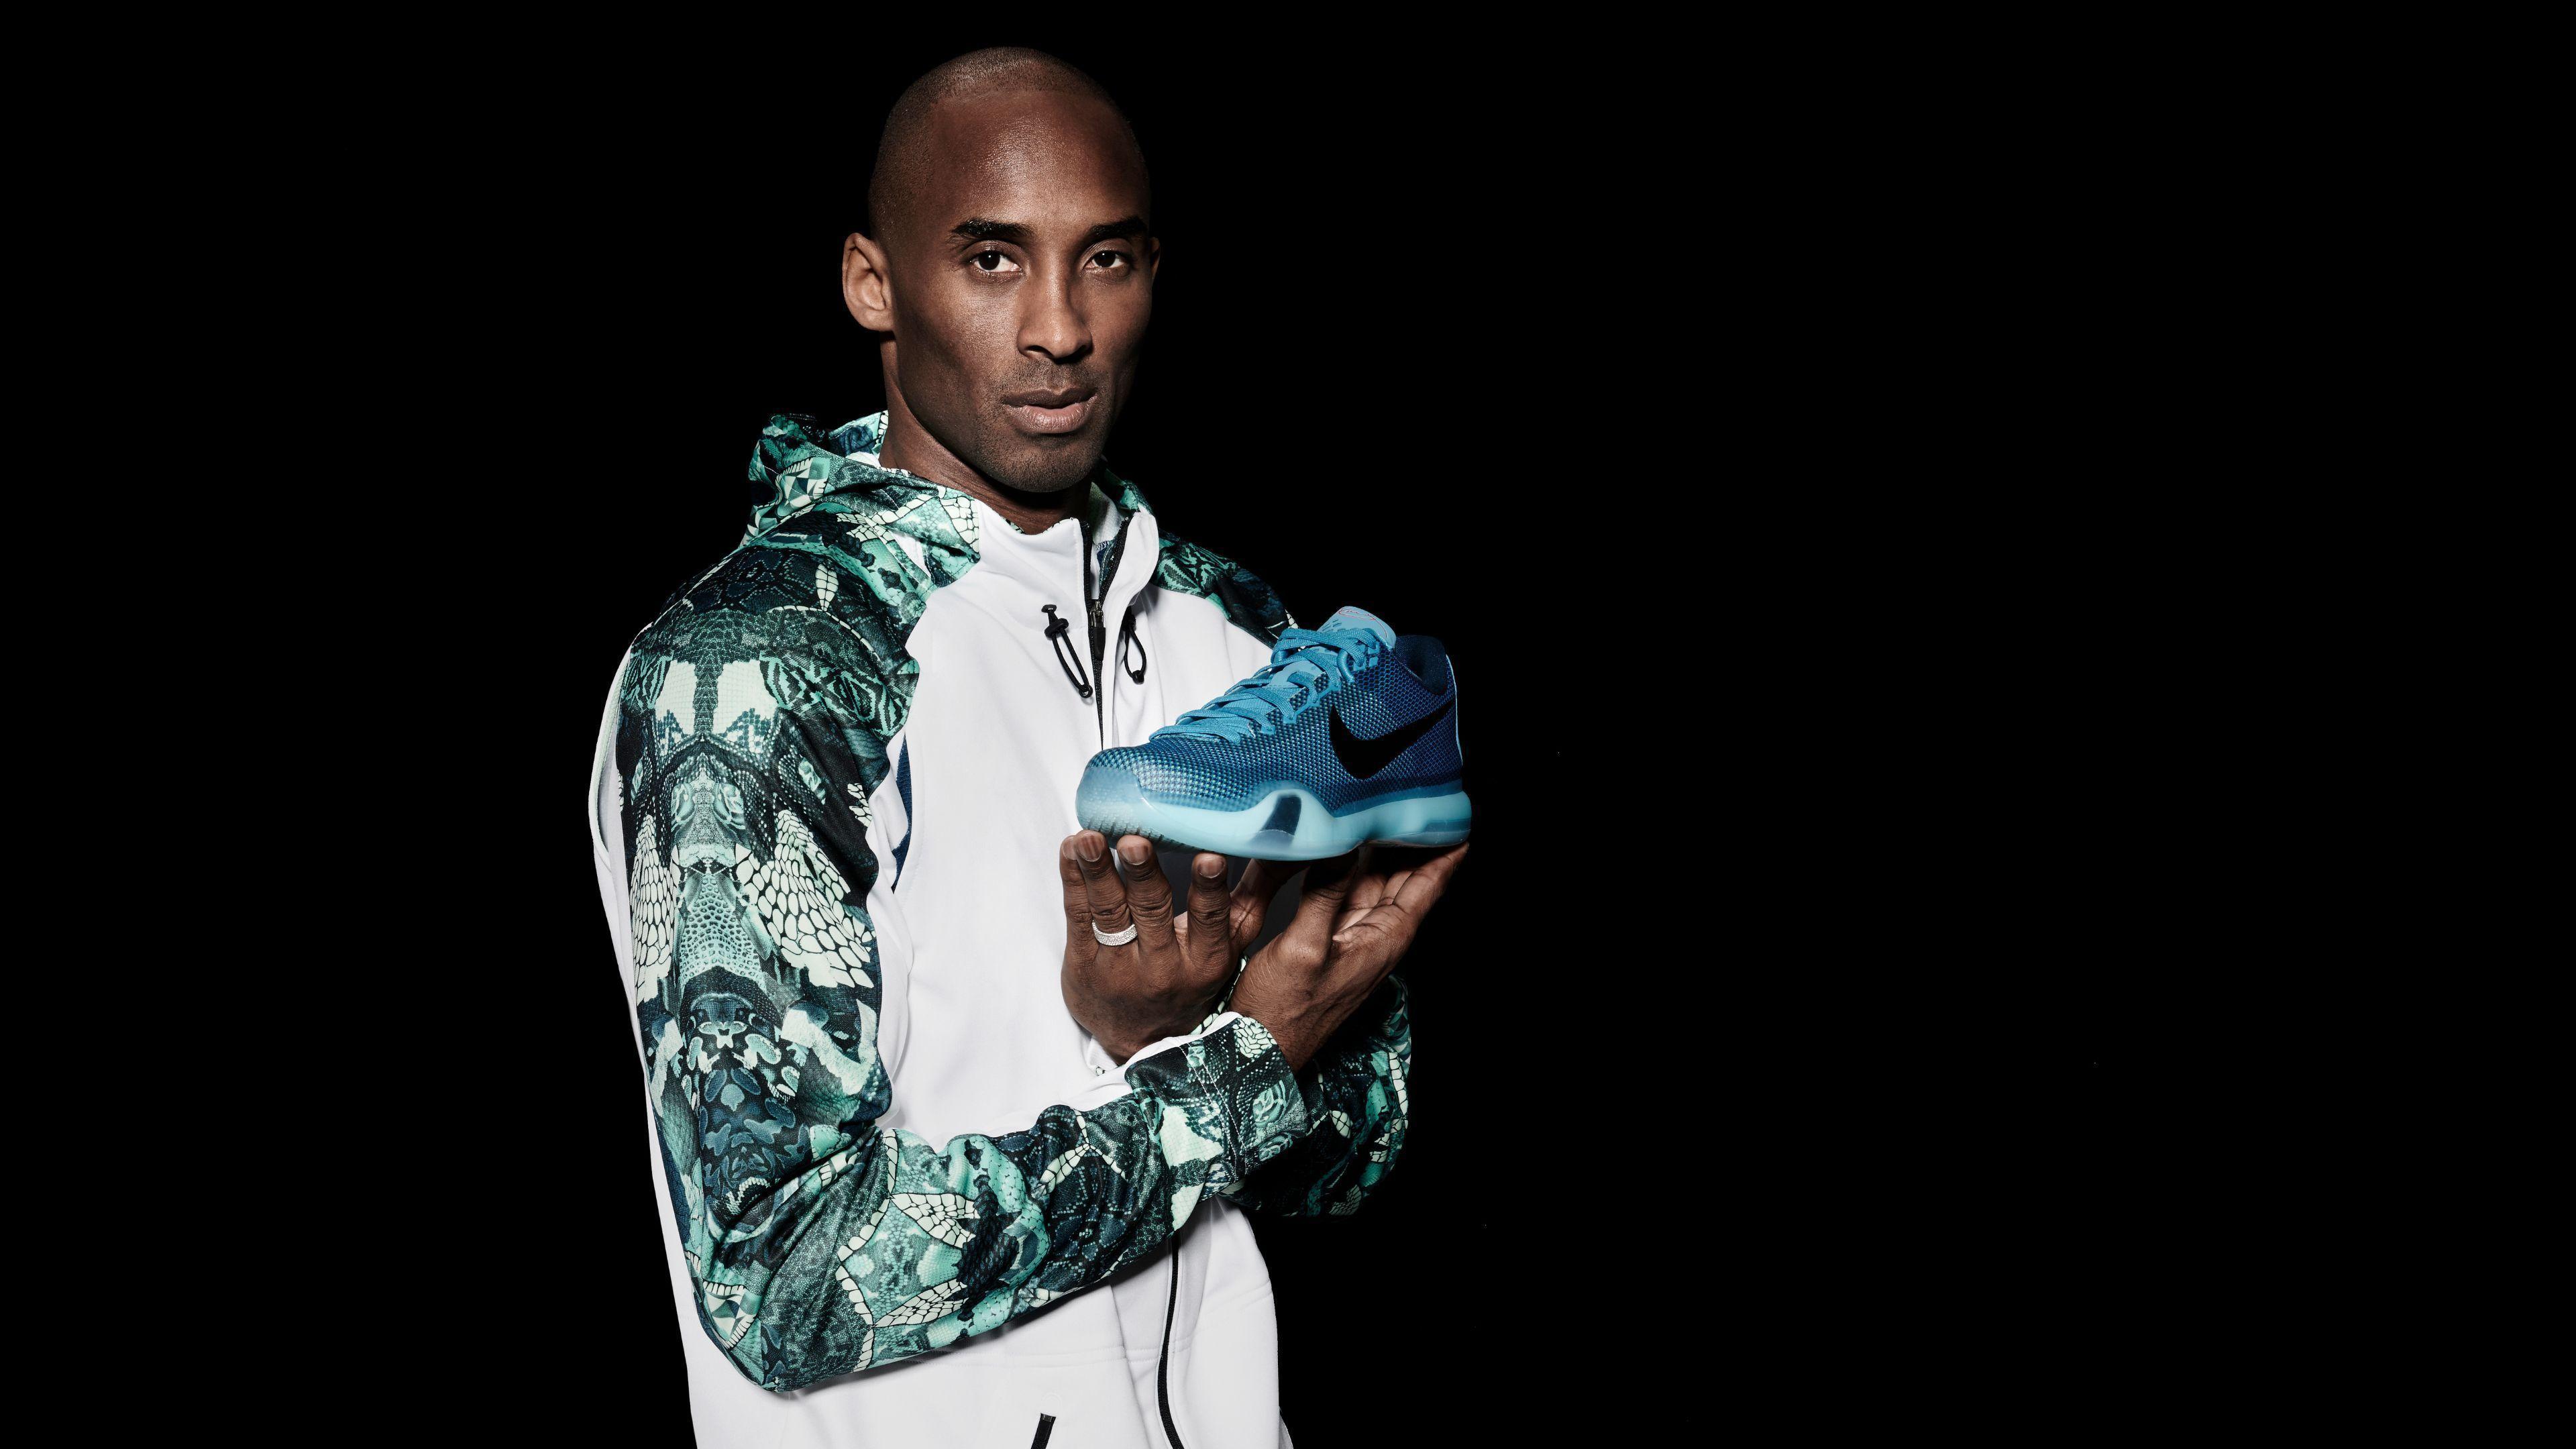 Nike Shoes Kobe Bryant 4K Wallpaper. Free 4K Wallpaper